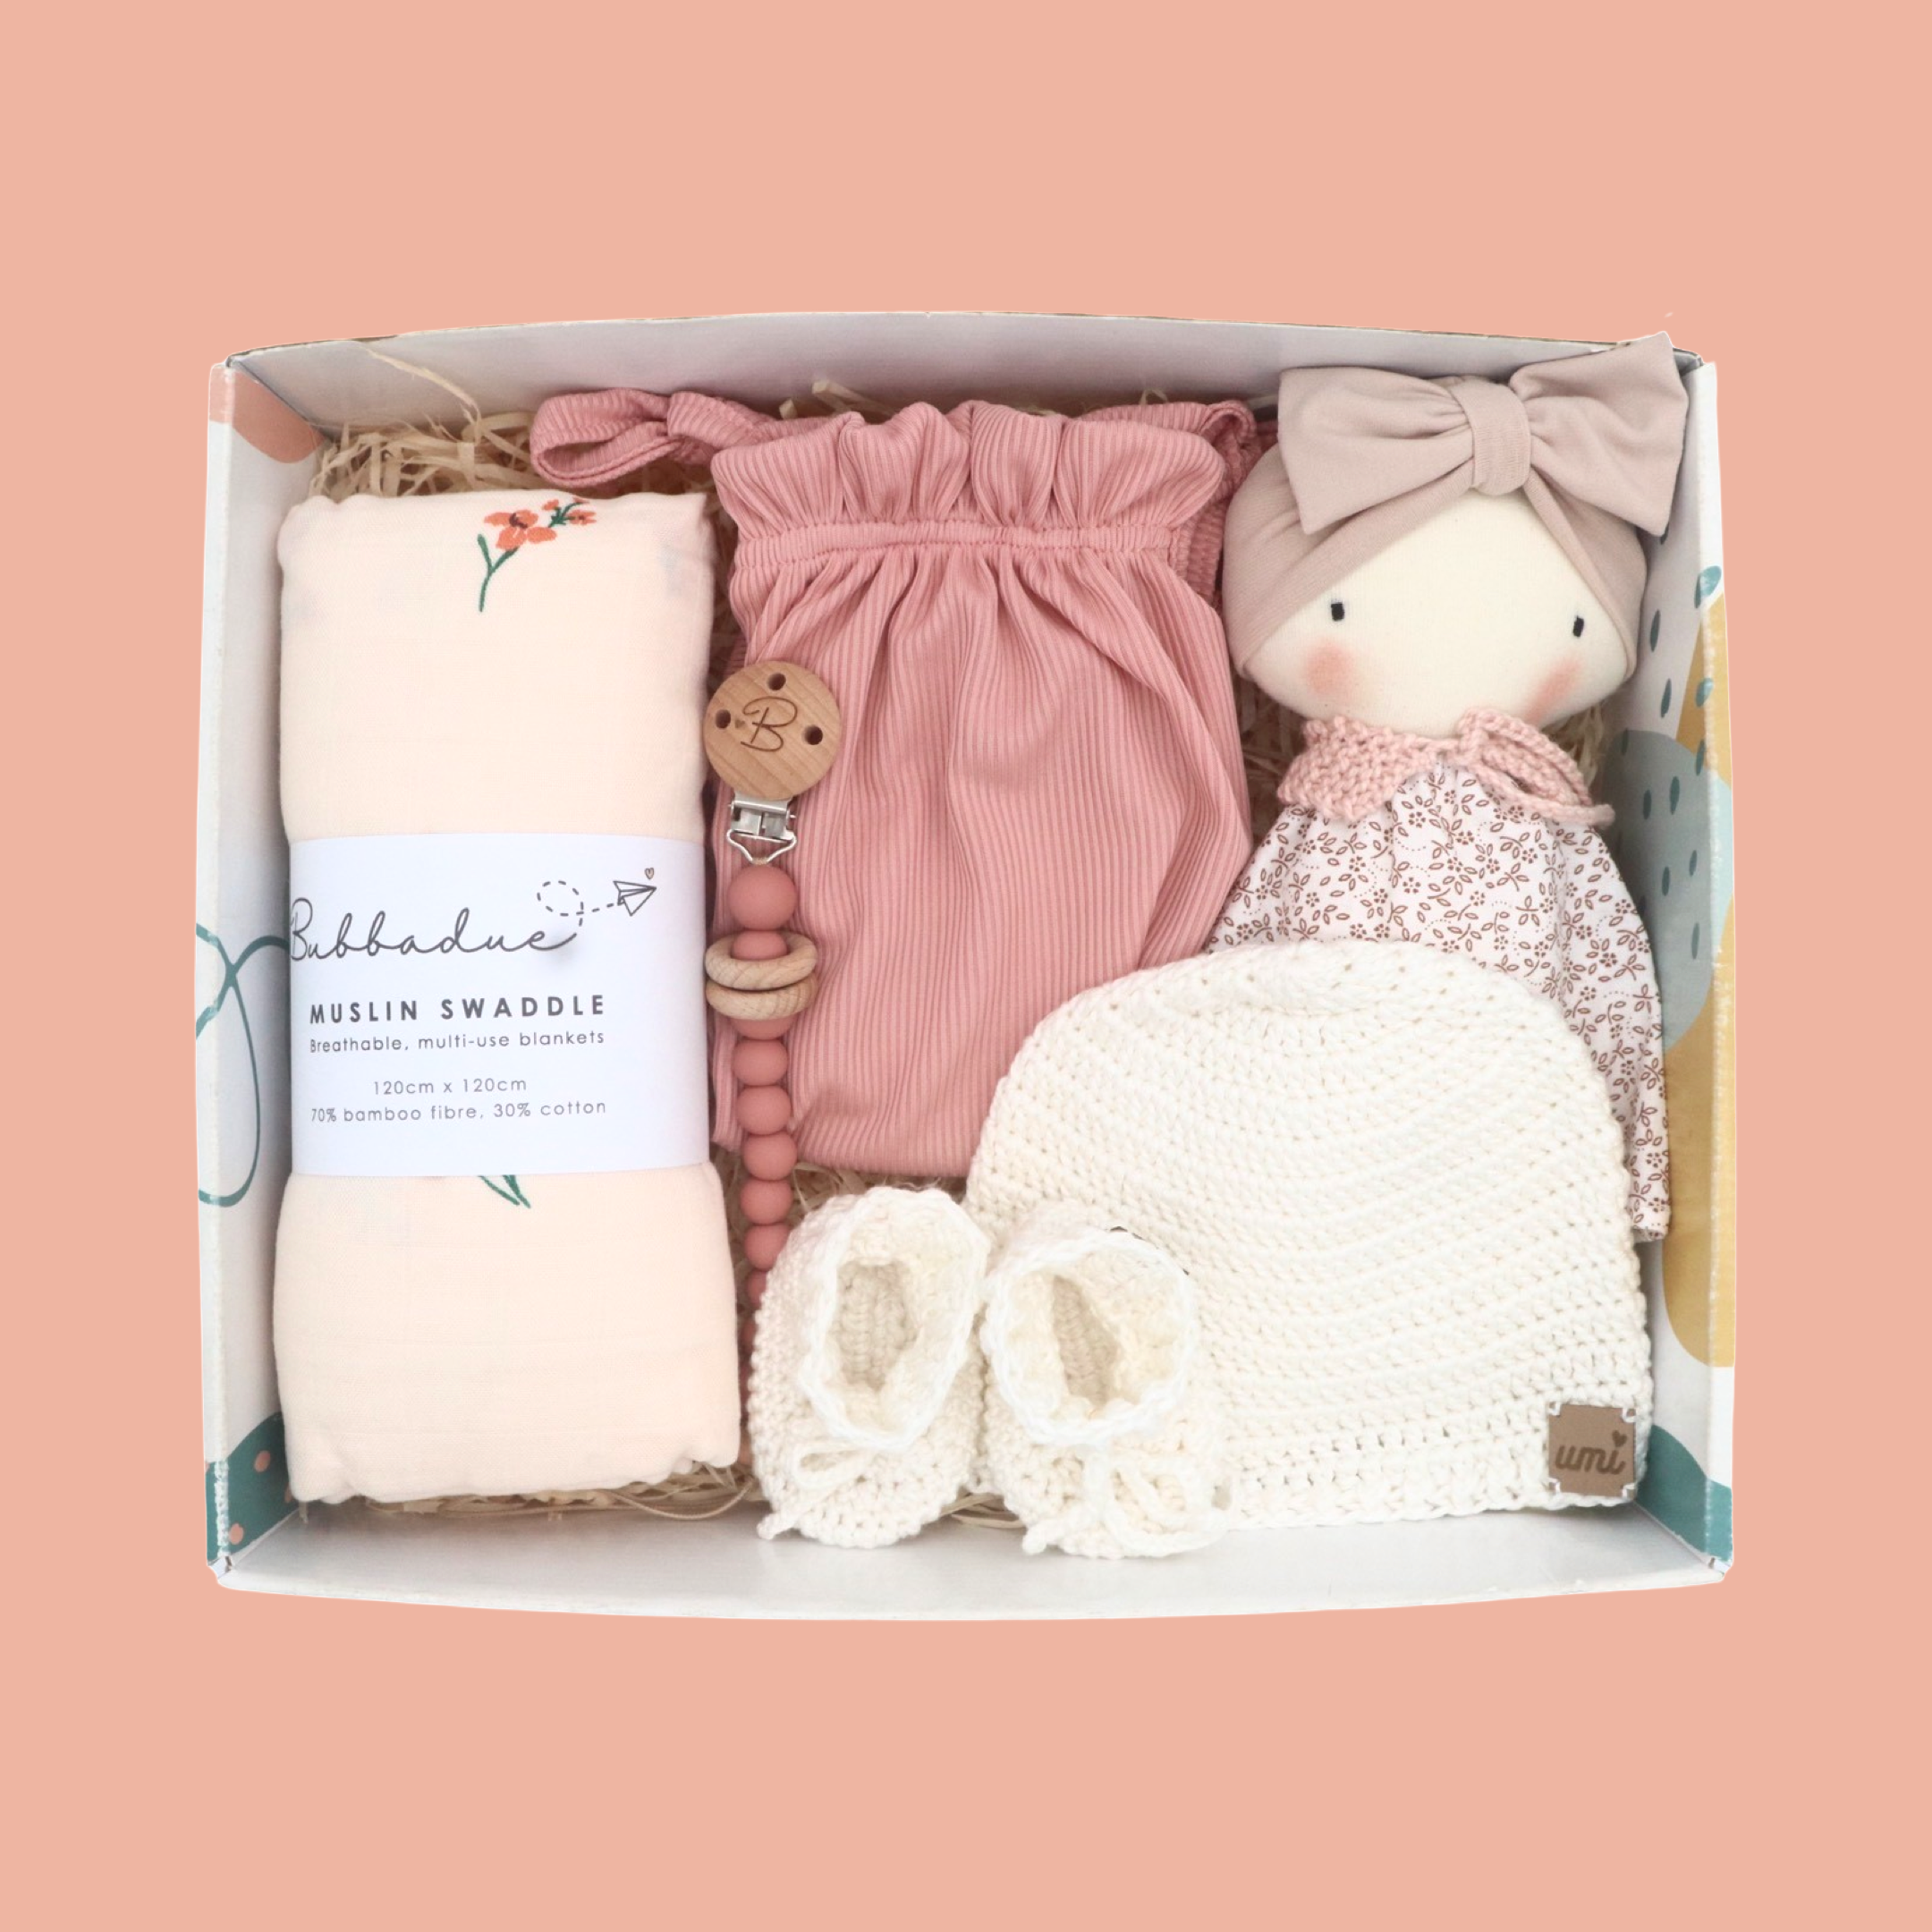 The Taylor Box - Baby Gift Box - Bubbadue